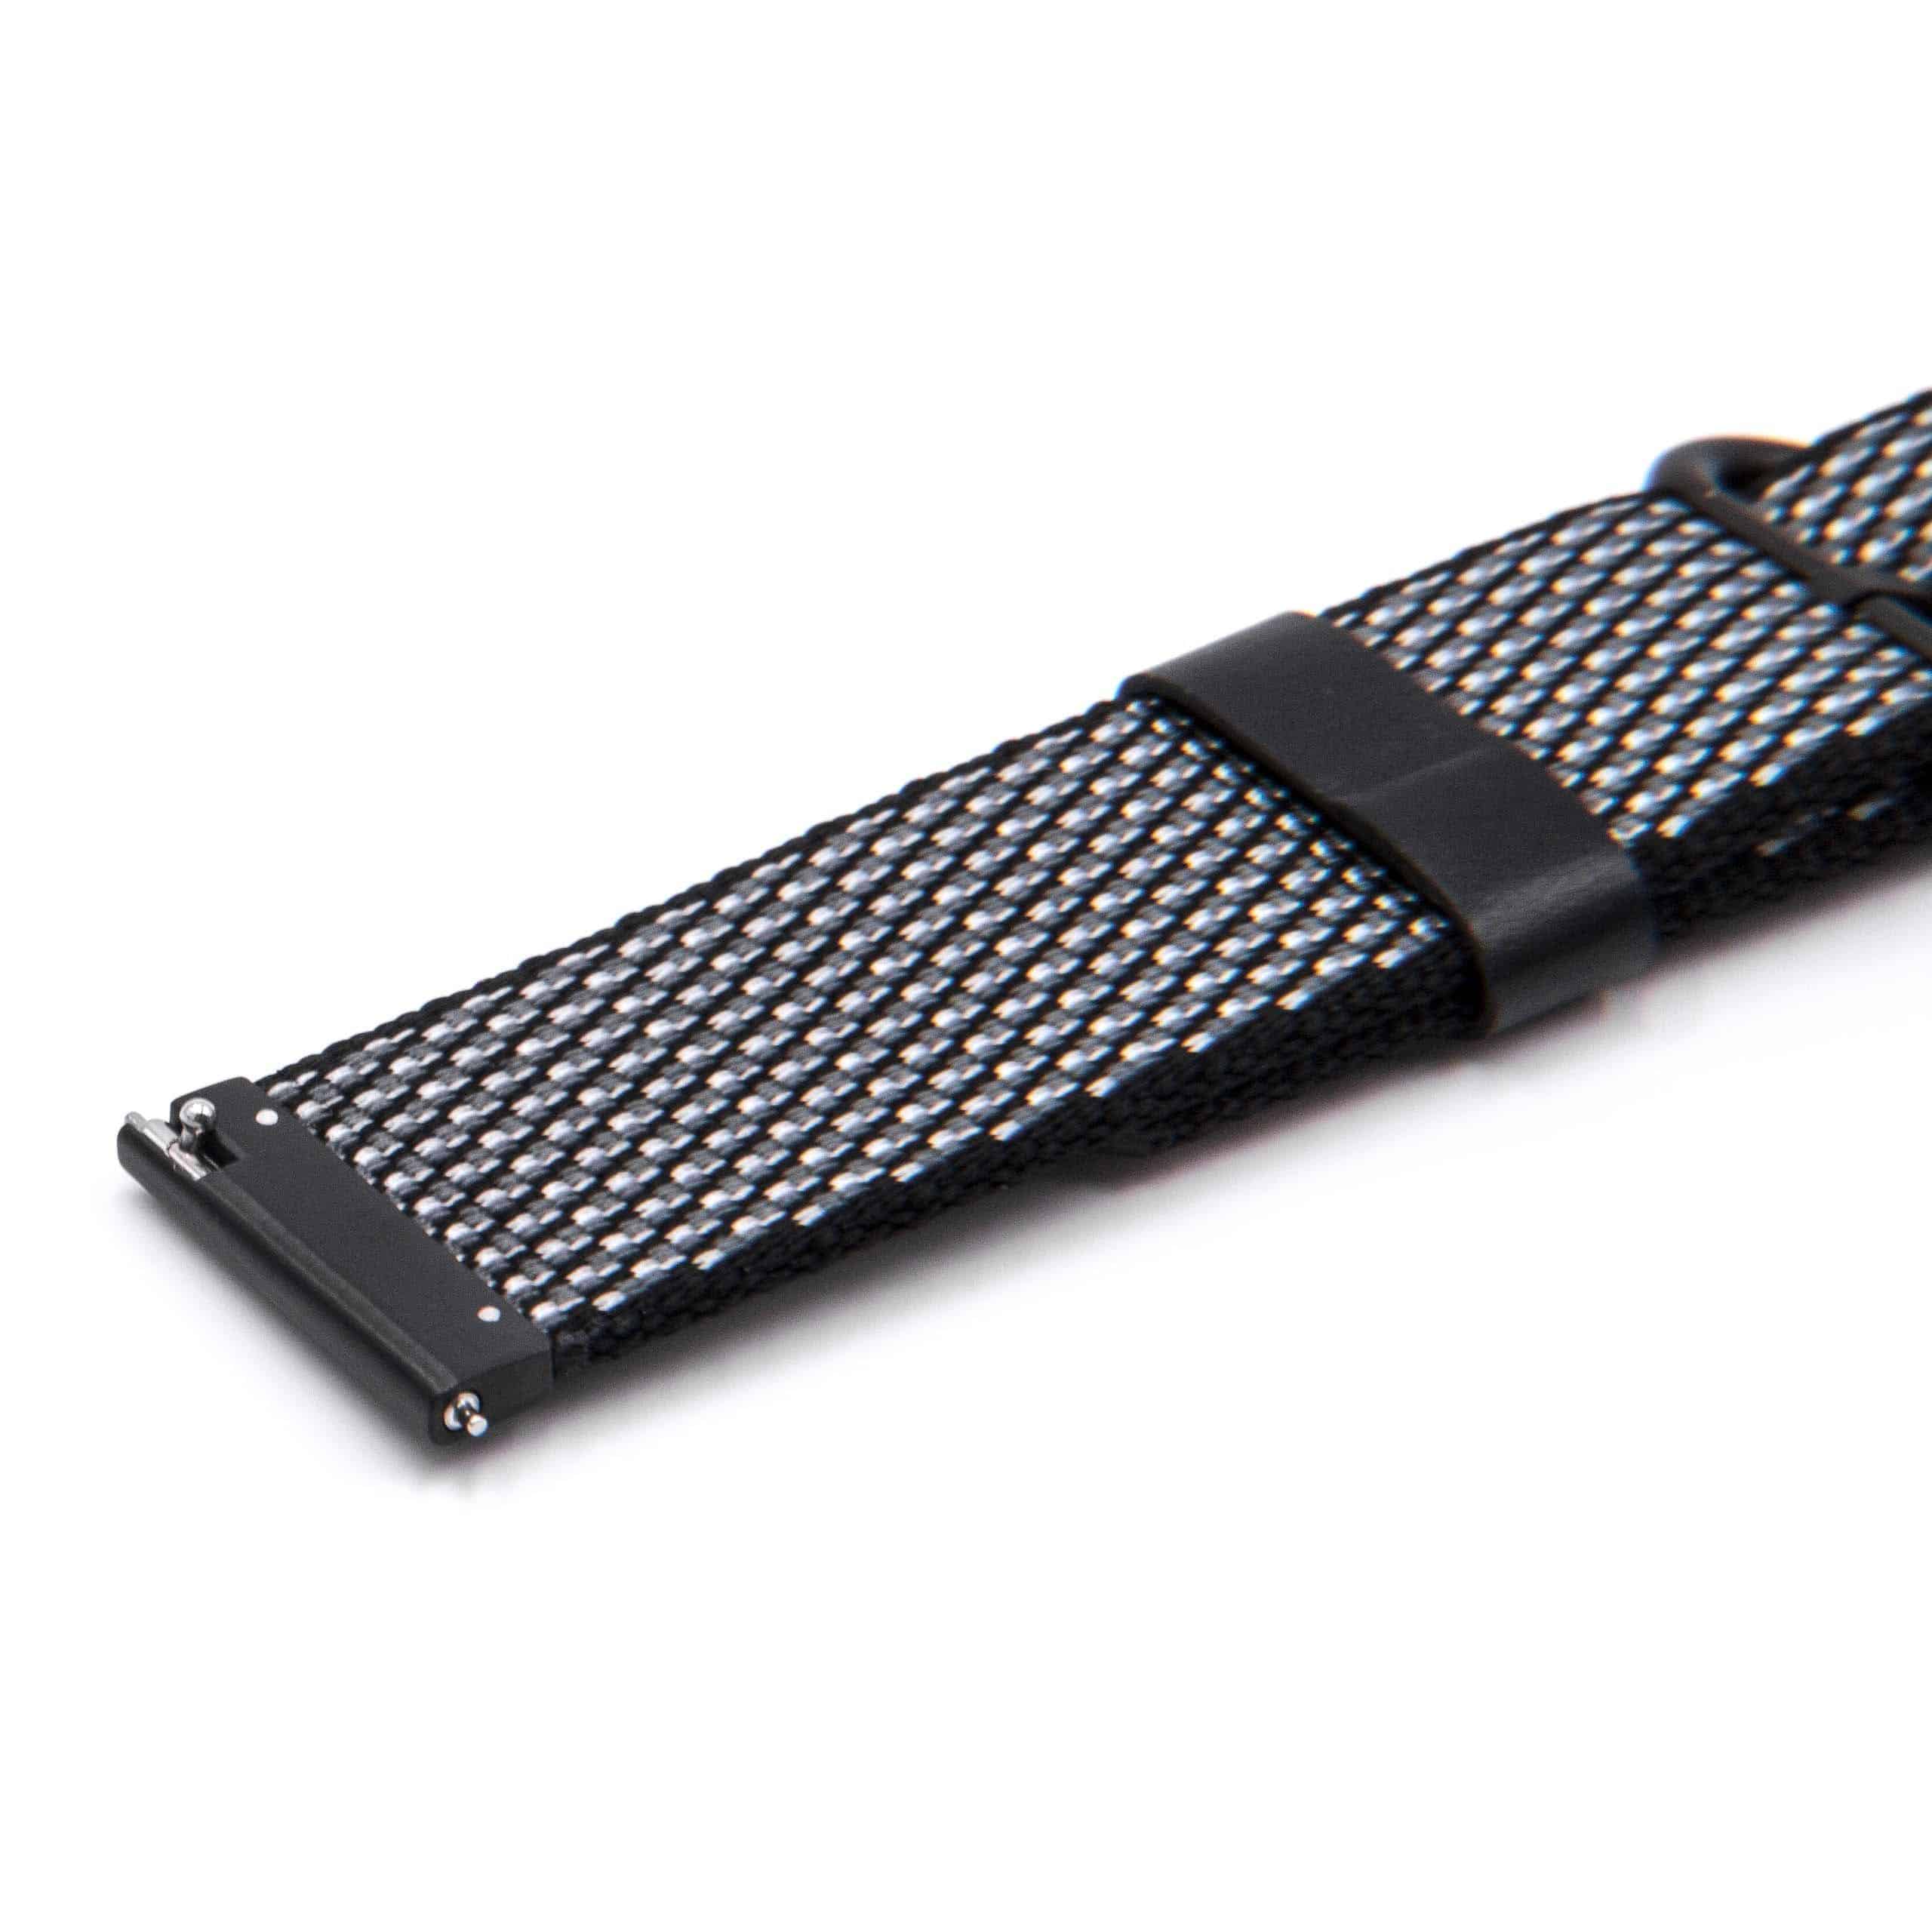 Pasek do smartwatch LG - dł. 12,3cm + 8,5 cm, szer. 22 mm, nylon, czarny, biały